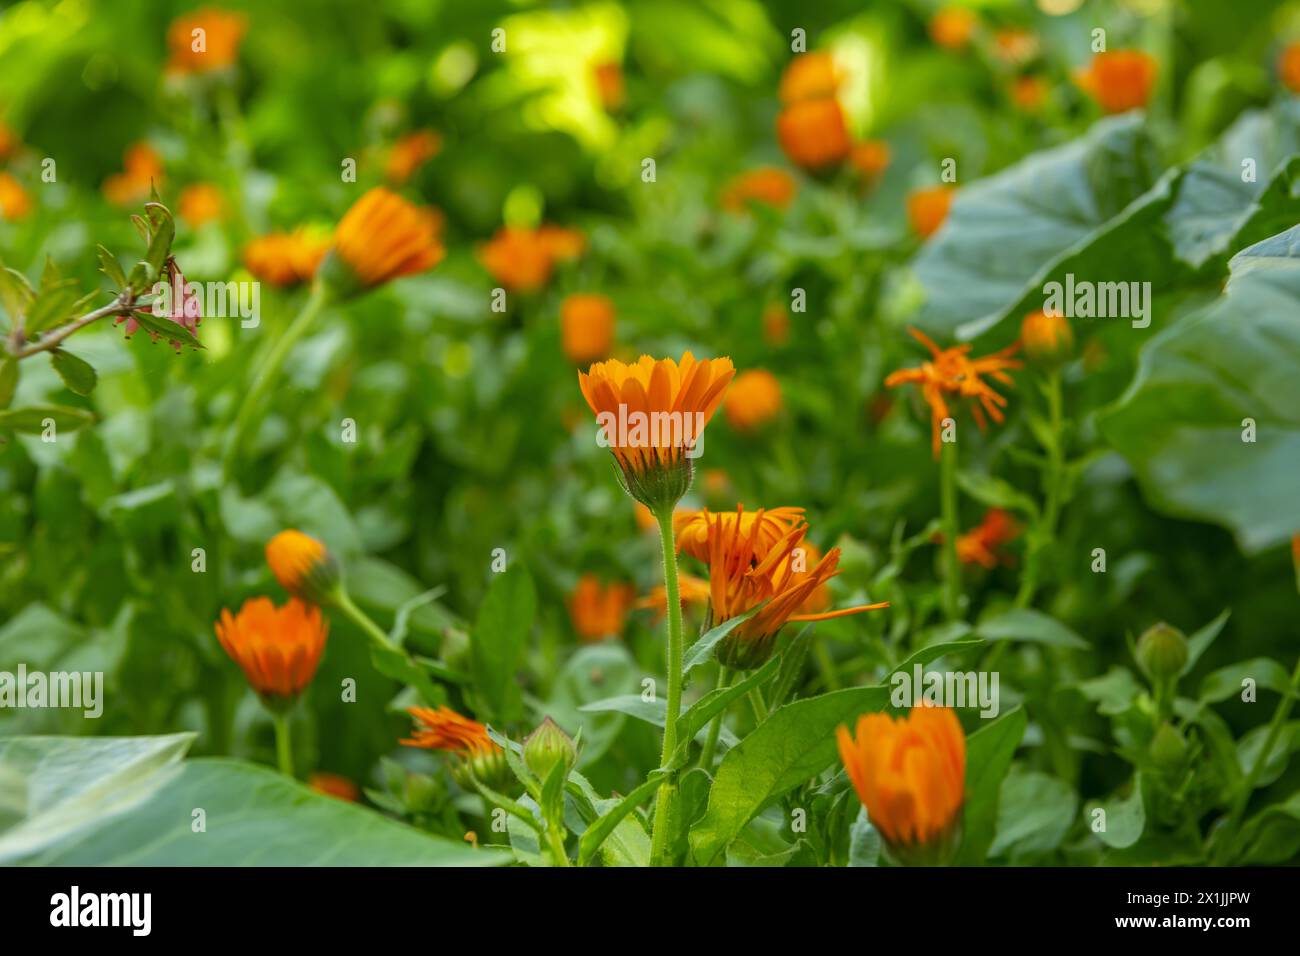 Piccoli fiori d'arancia con steli dritti che aprono i petali all'inizio della giornata in un campo pieno di verde Foto Stock